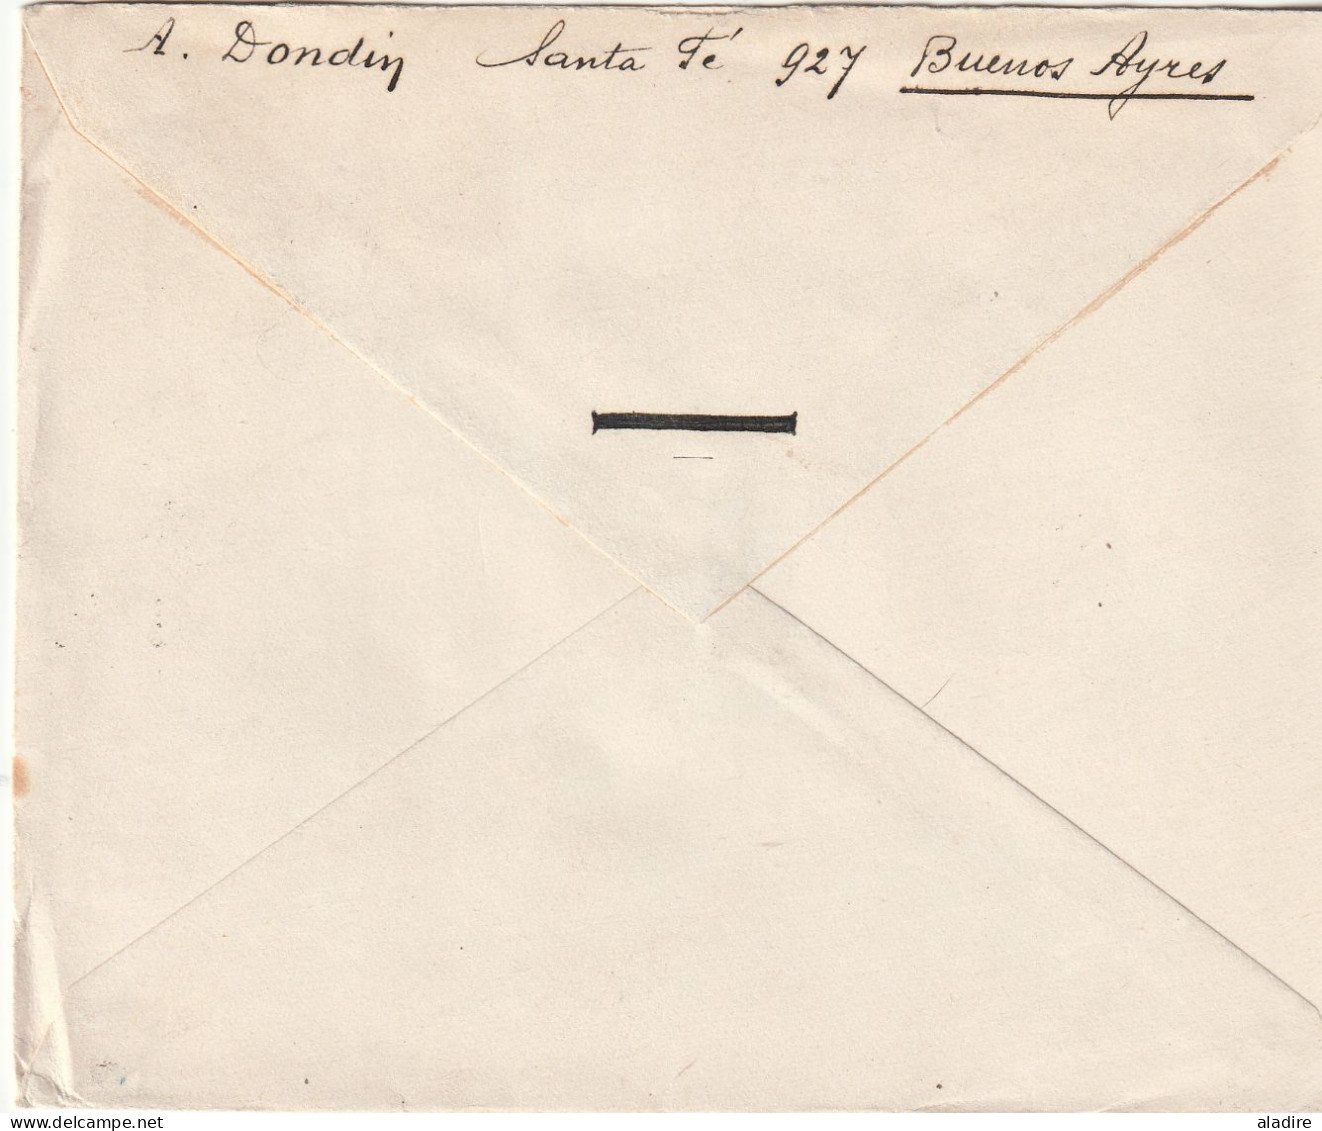 1858 /1939 - collection de 9 lettres, entiers et enveloppes (+ 3 en cadeau) - lignes maritimes françaises ARGENTINE